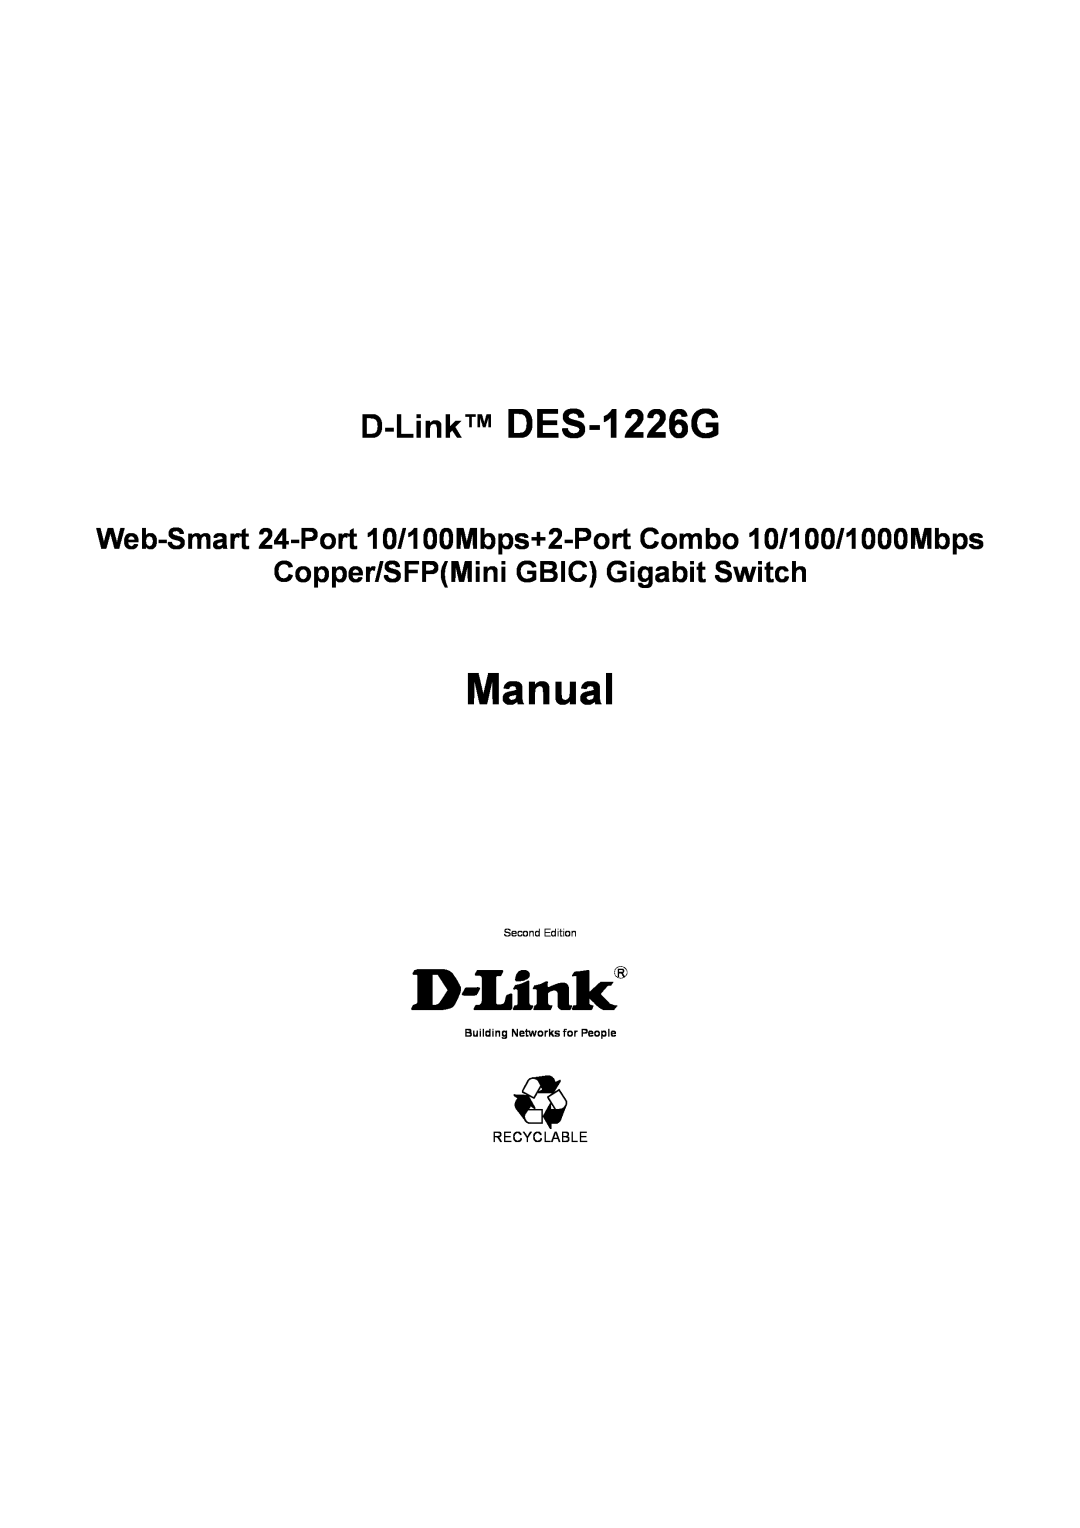 D-Link manual Manual, D-Link DES-1226G, Web-Smart 24-Port 10/100Mbps+2-Port Combo 10/100/1000Mbps, Second Edition 